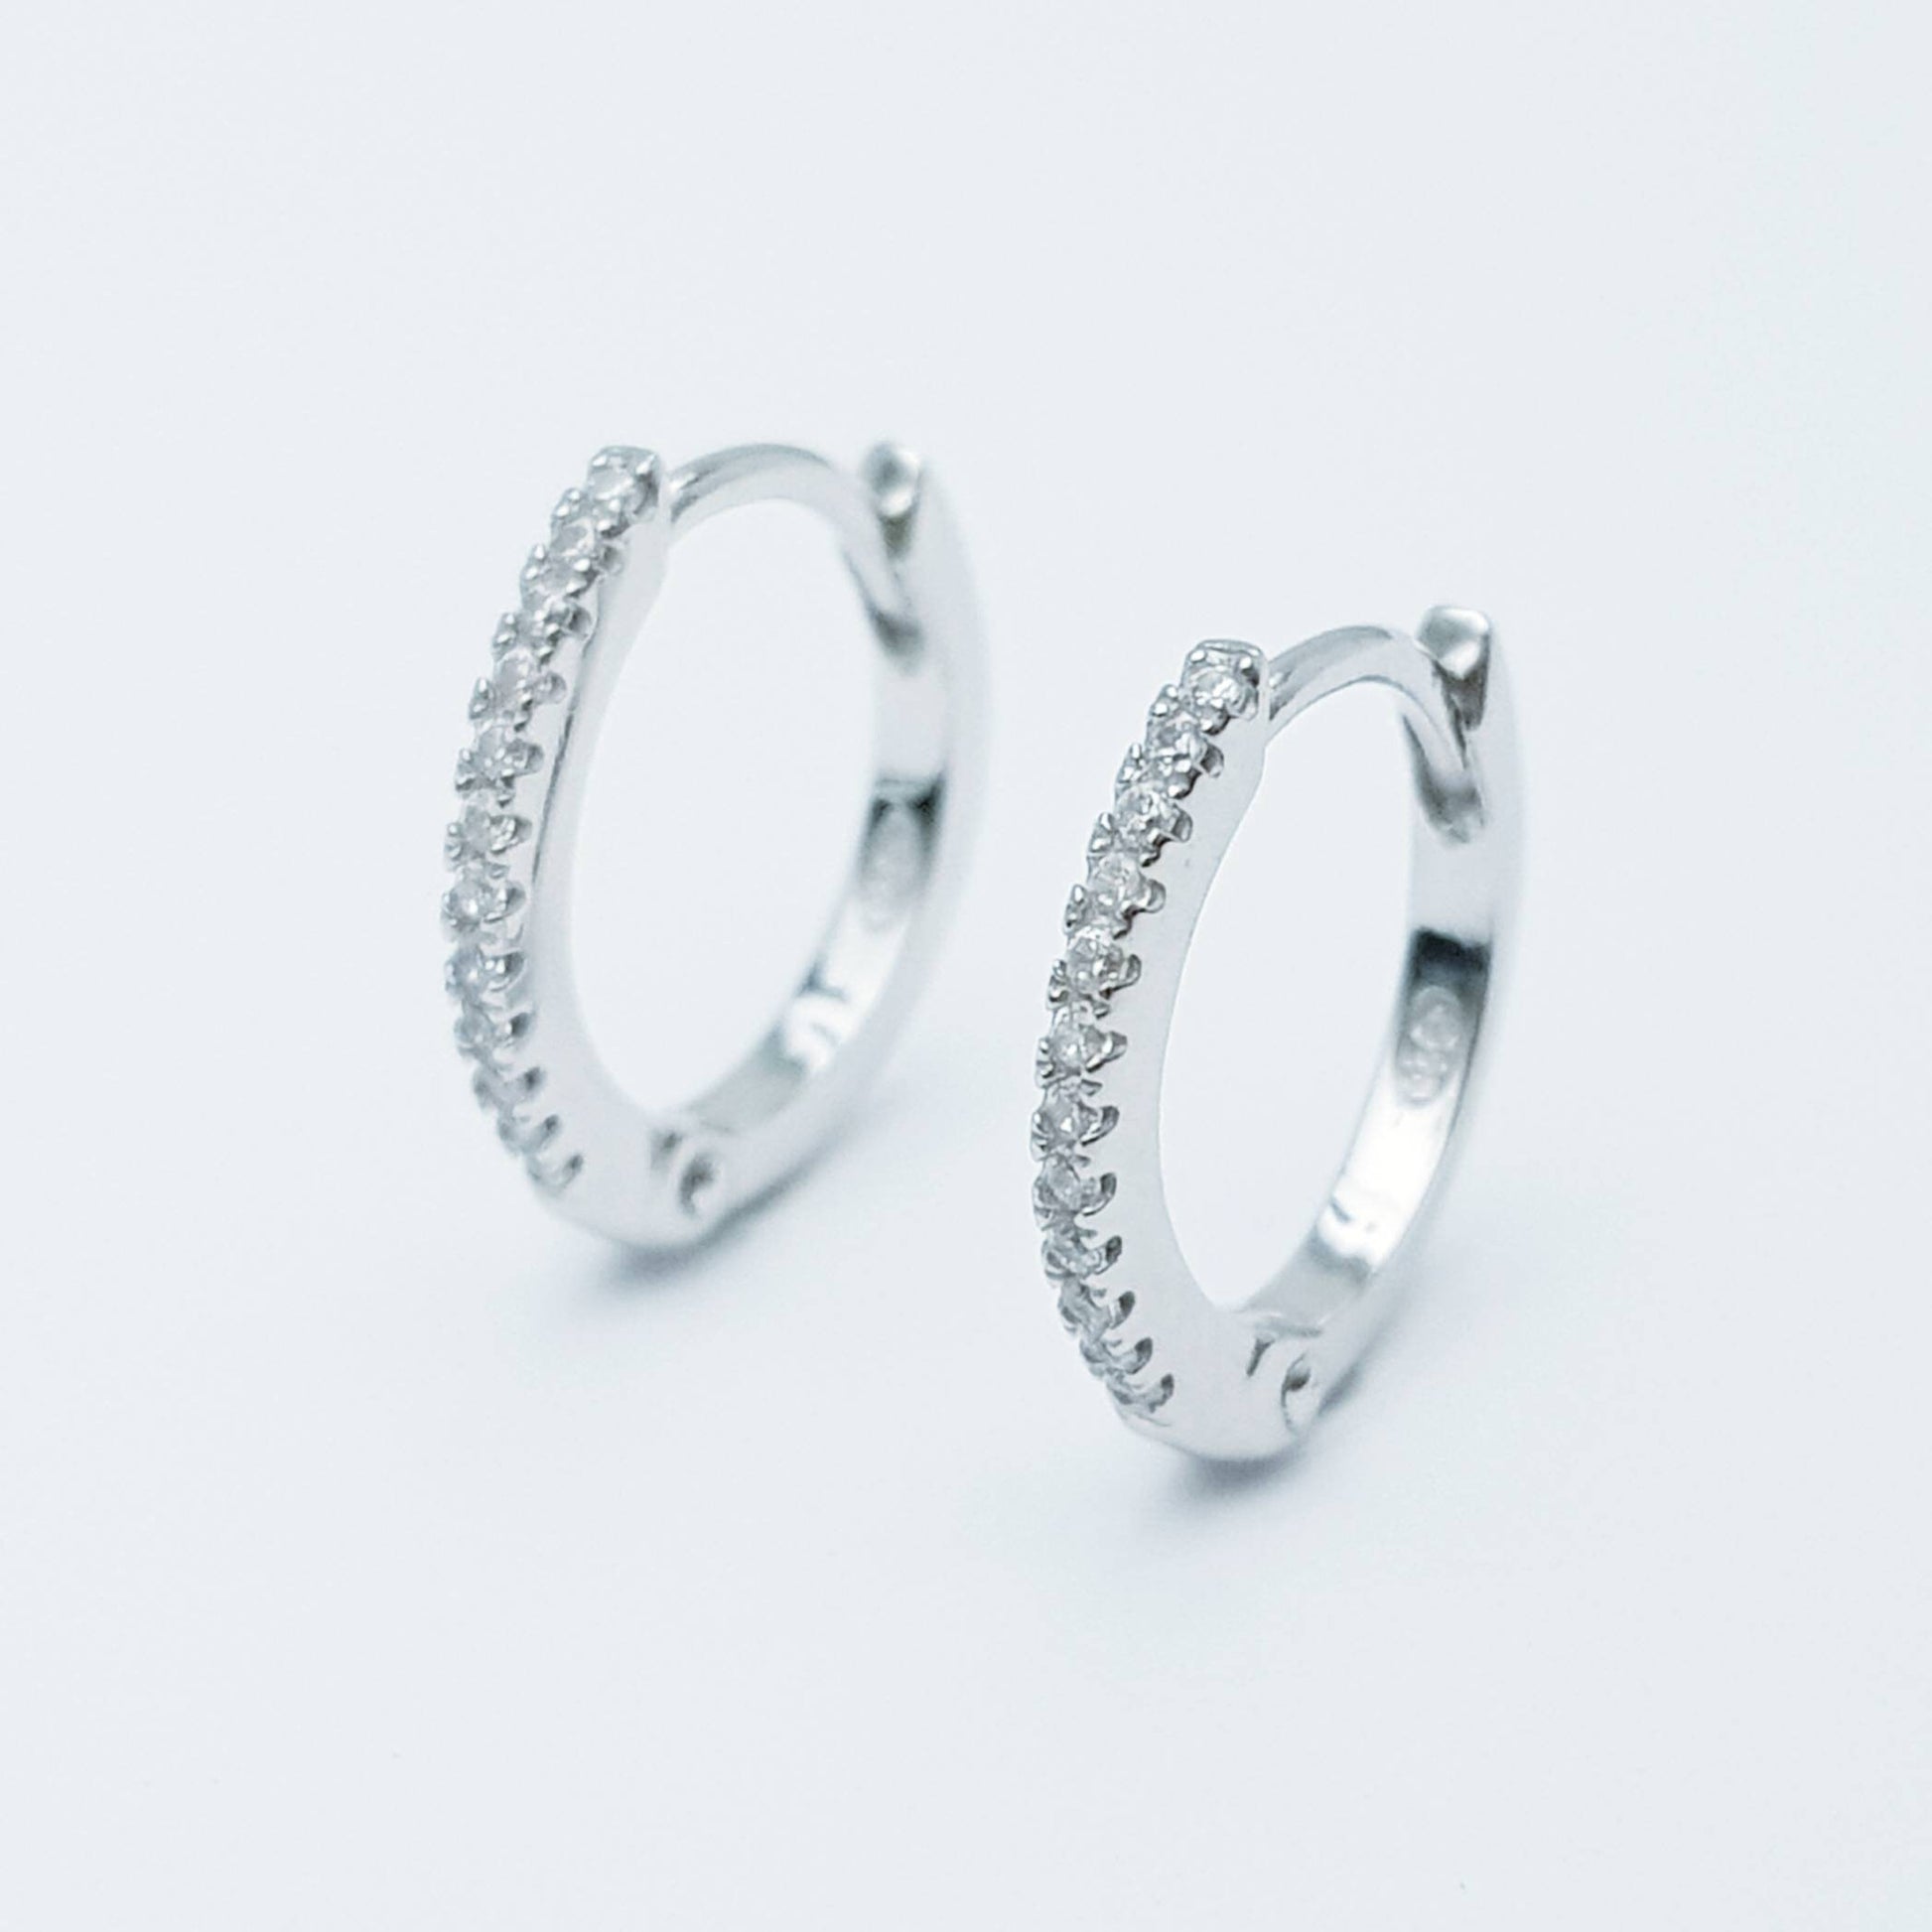 Thin hoop earrings - minimal jewelry - dainty hoops - silver Huggie earrings